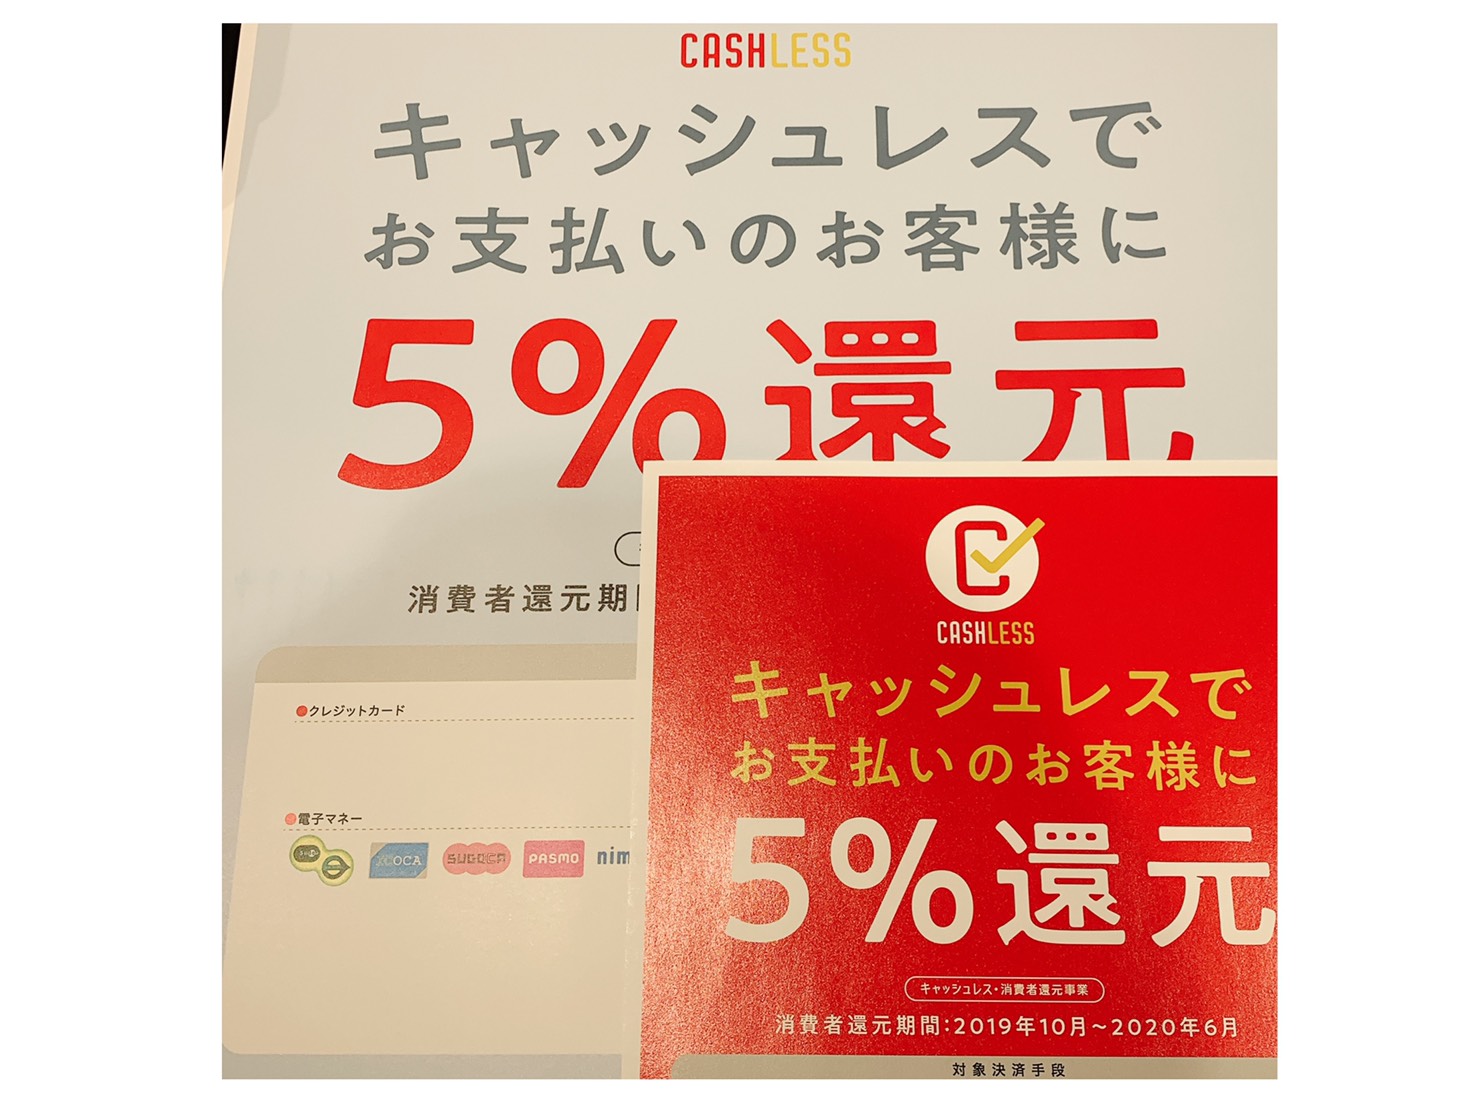 いずの広島駅ekie店・銘品館店はキャッシュレス決済５%還元【対象店】です